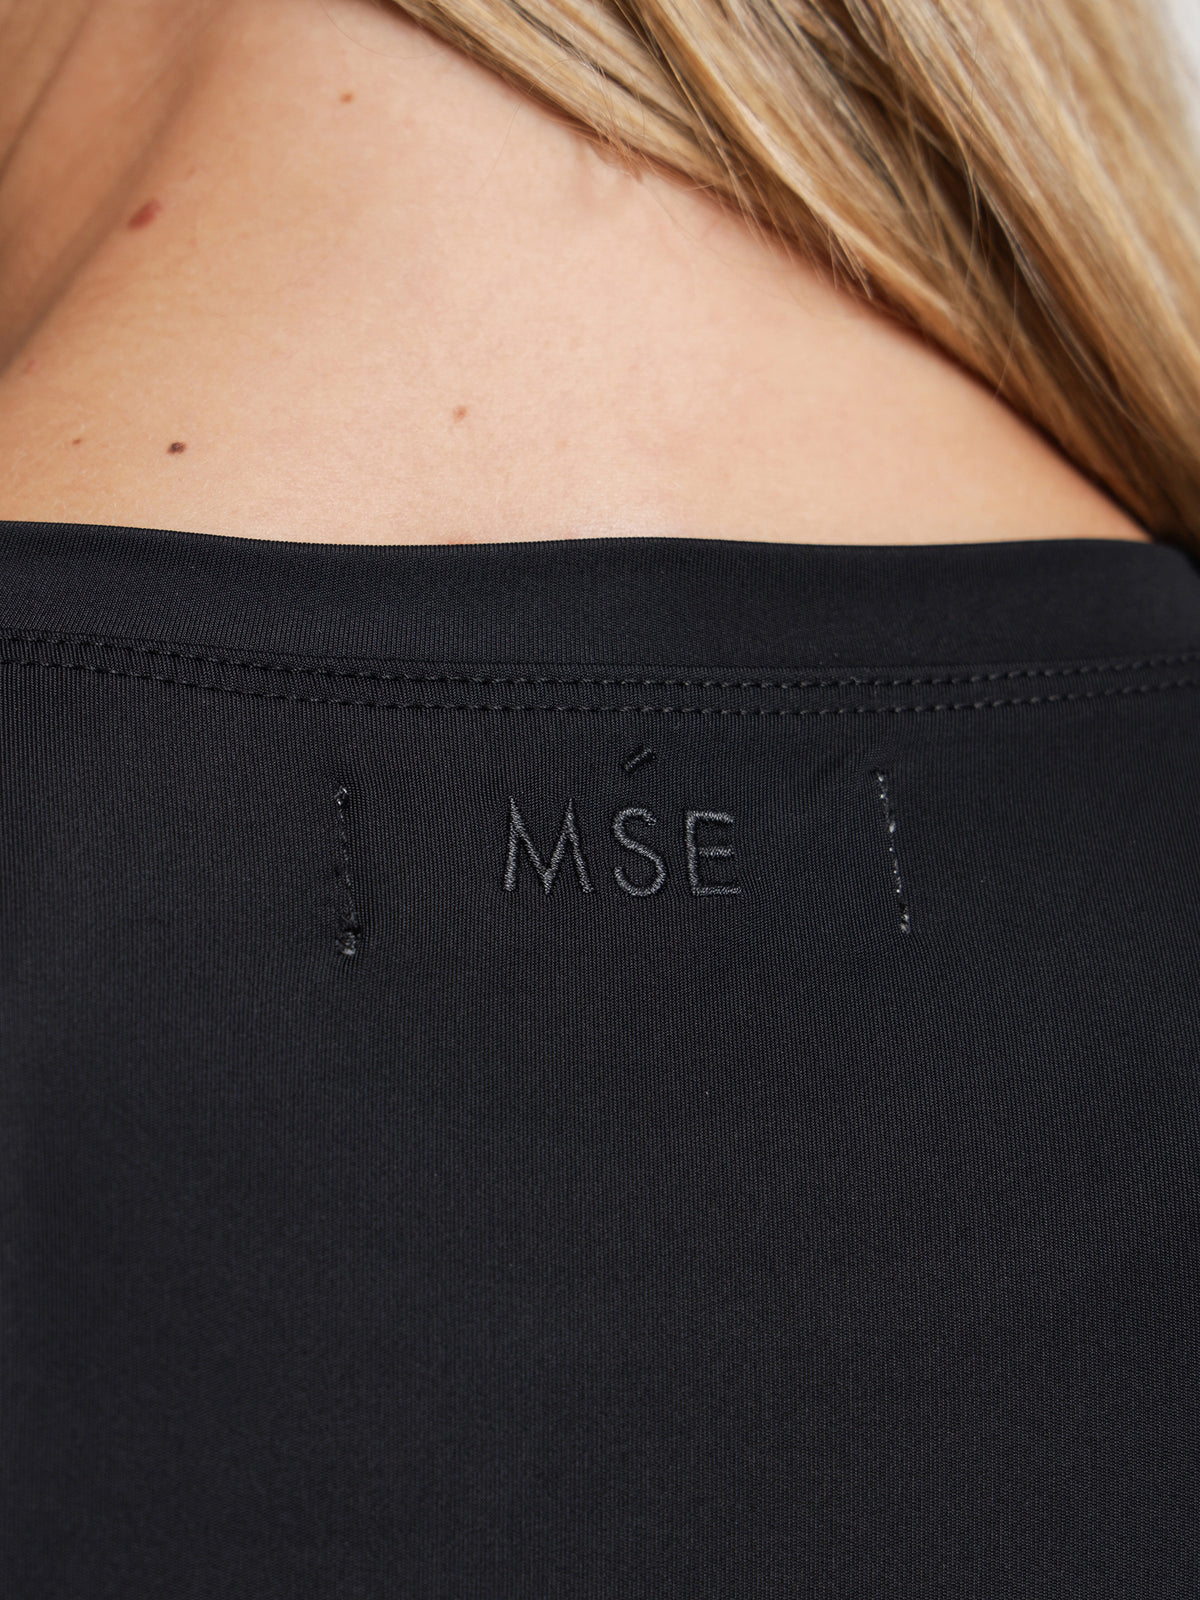 MSE Standard Long Sleeve Top in Black